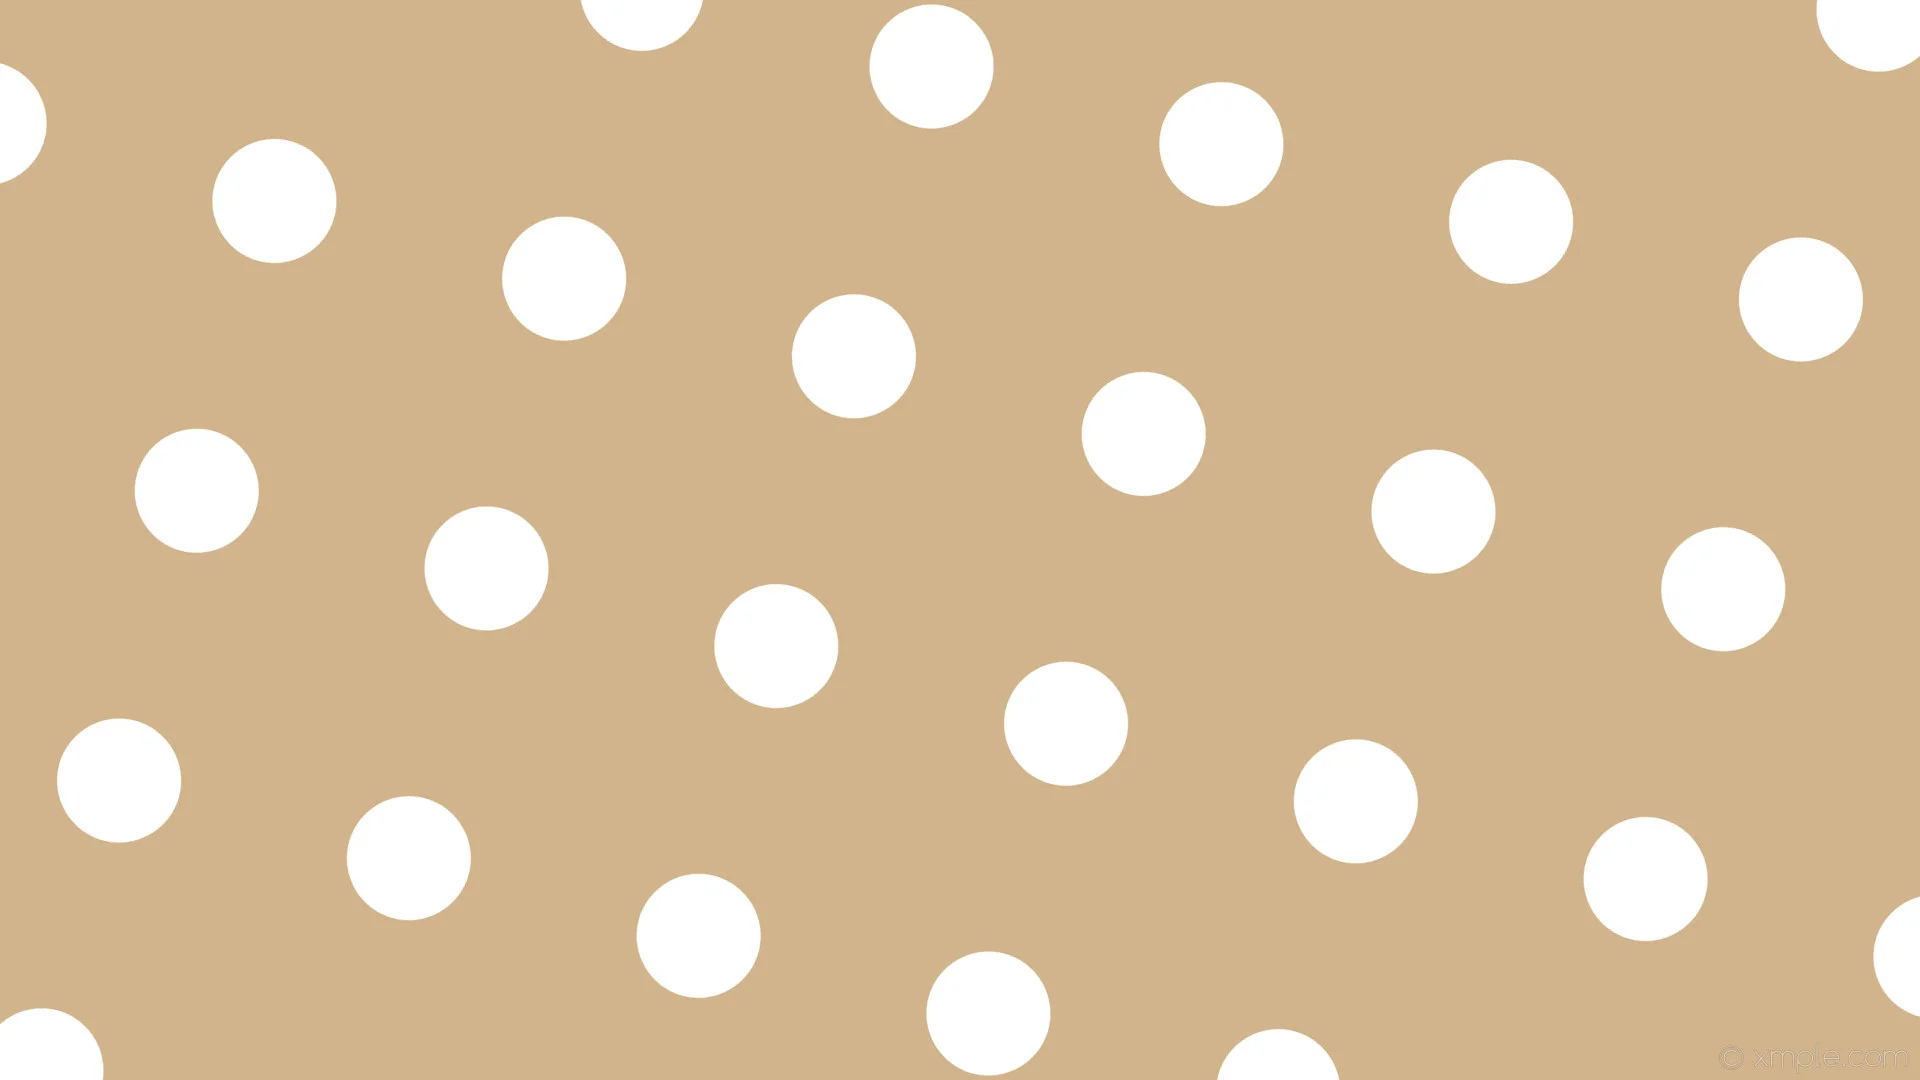 Wallpaper brown spots dots white polka tan #d2b48c #ffffff 165 124px 300px